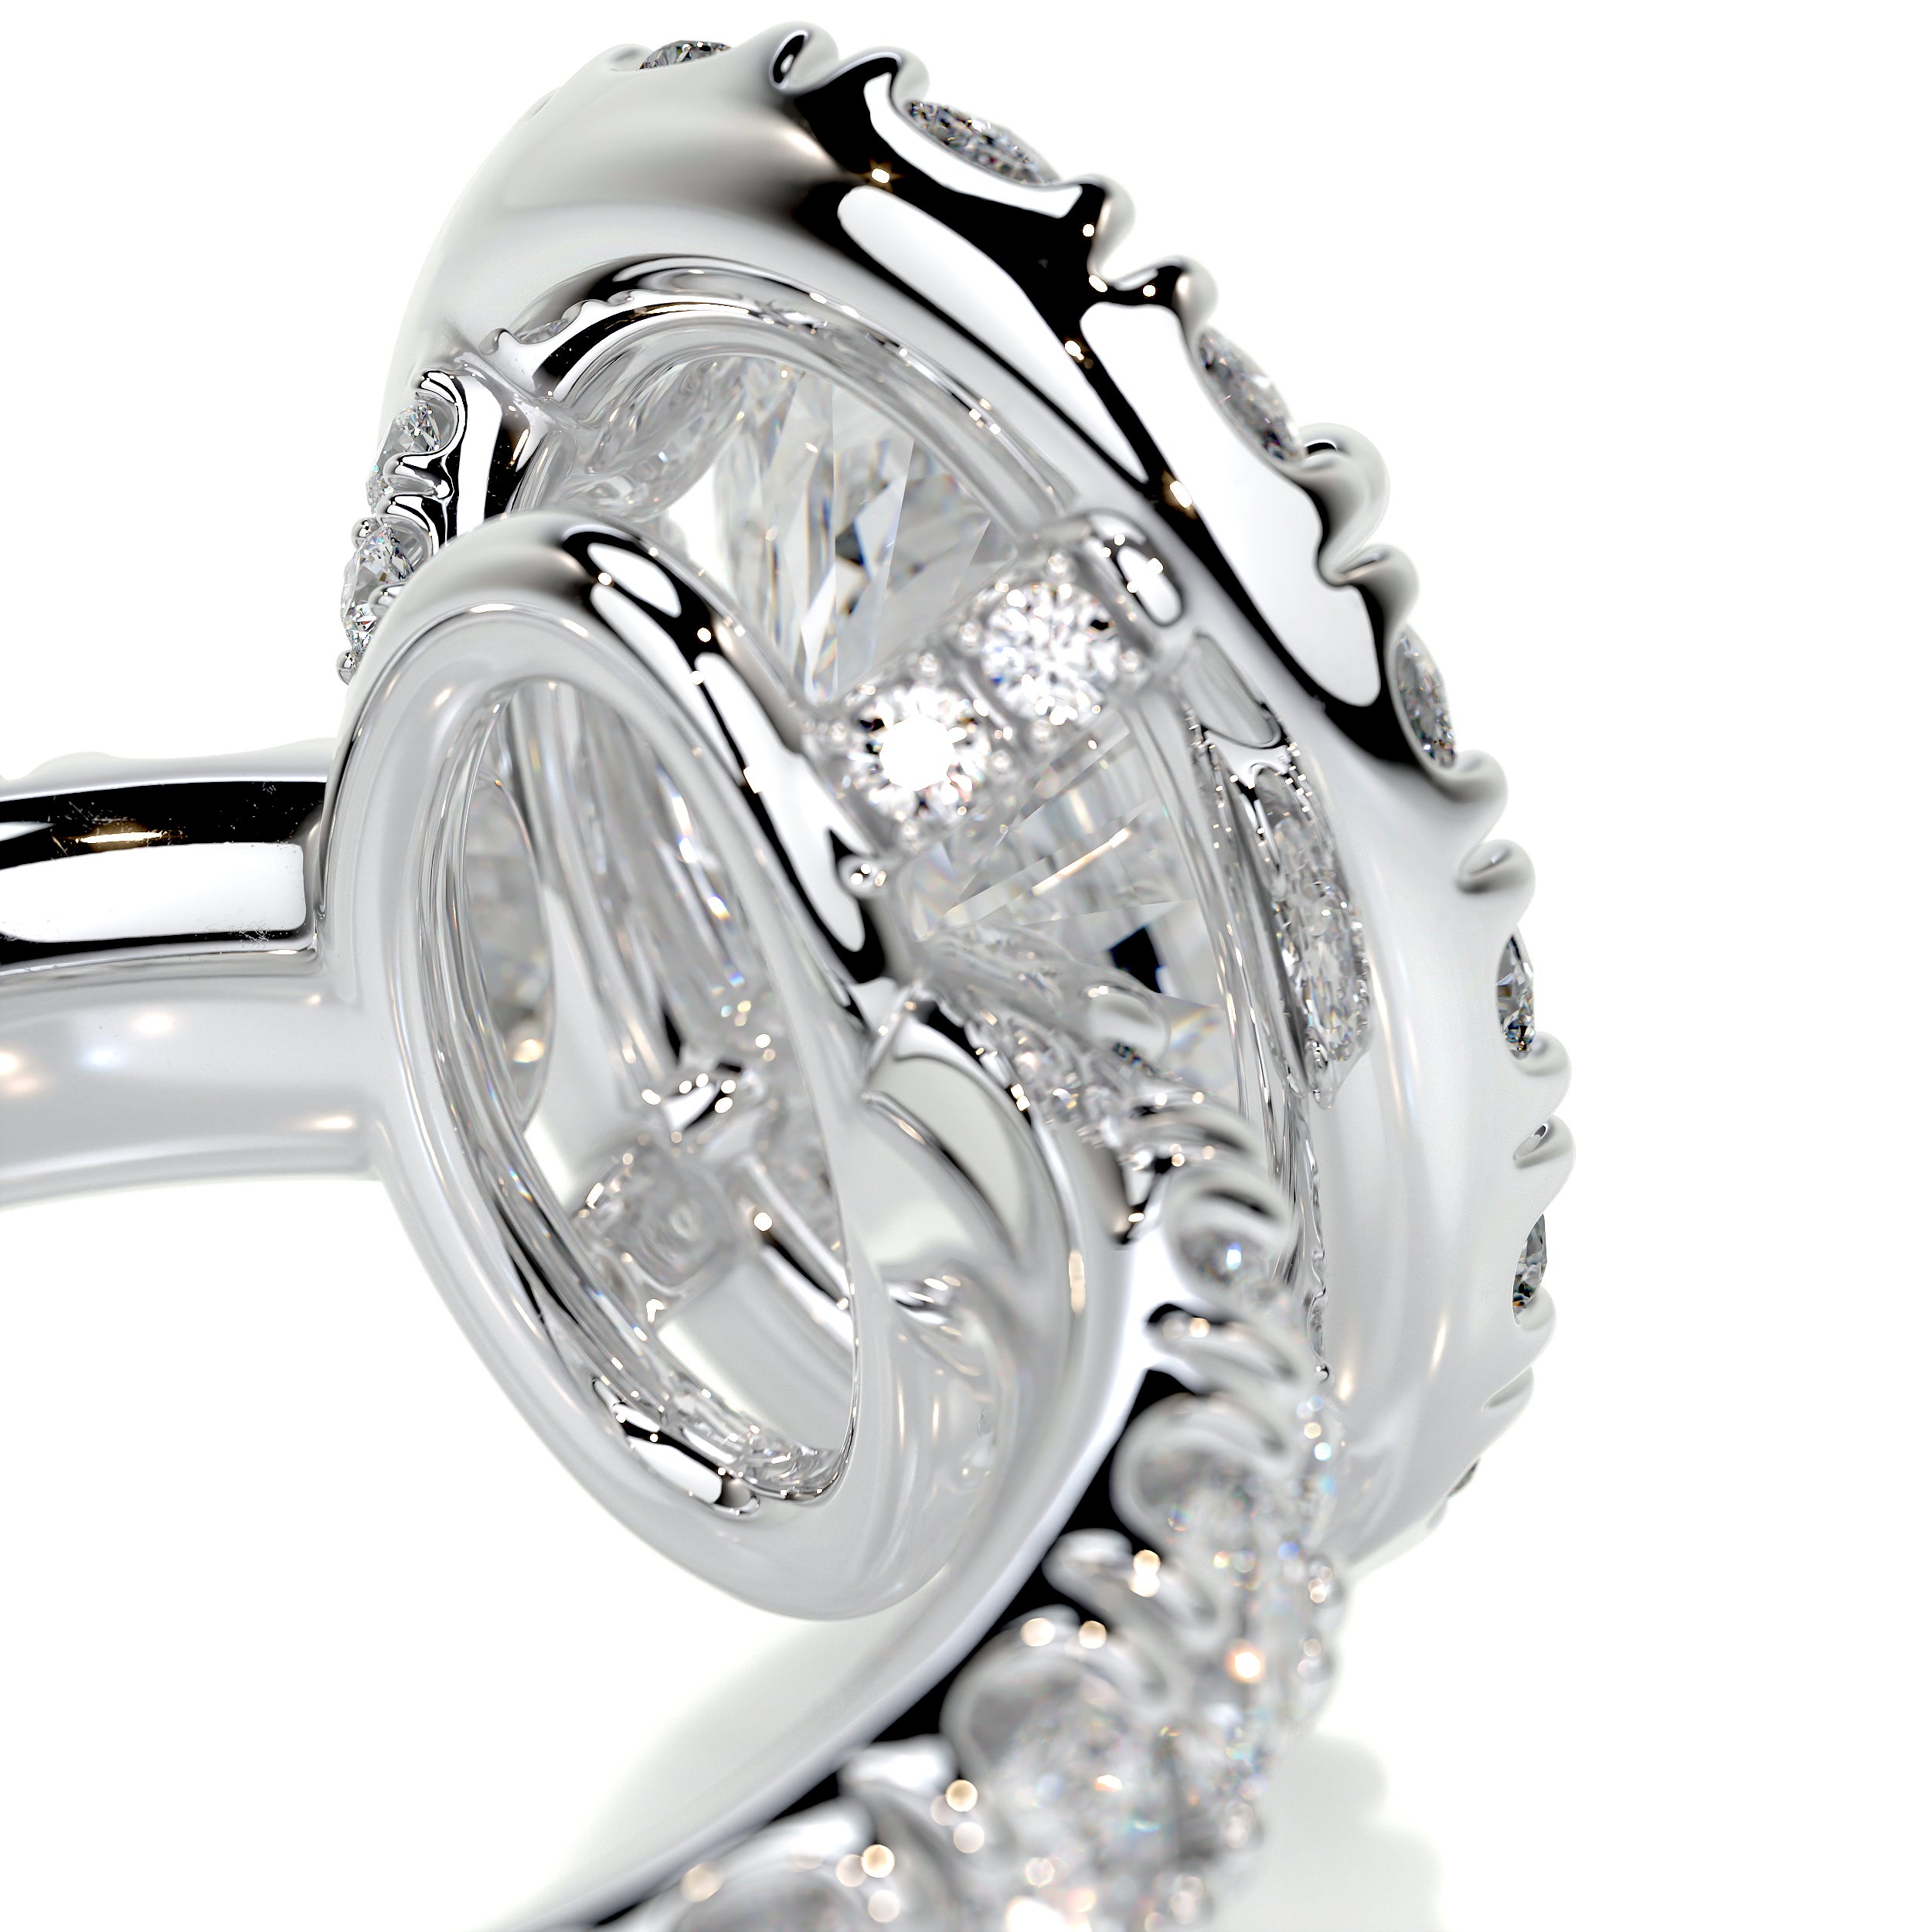 Maya Diamond Engagement Ring   (4 Carat) -14K White Gold